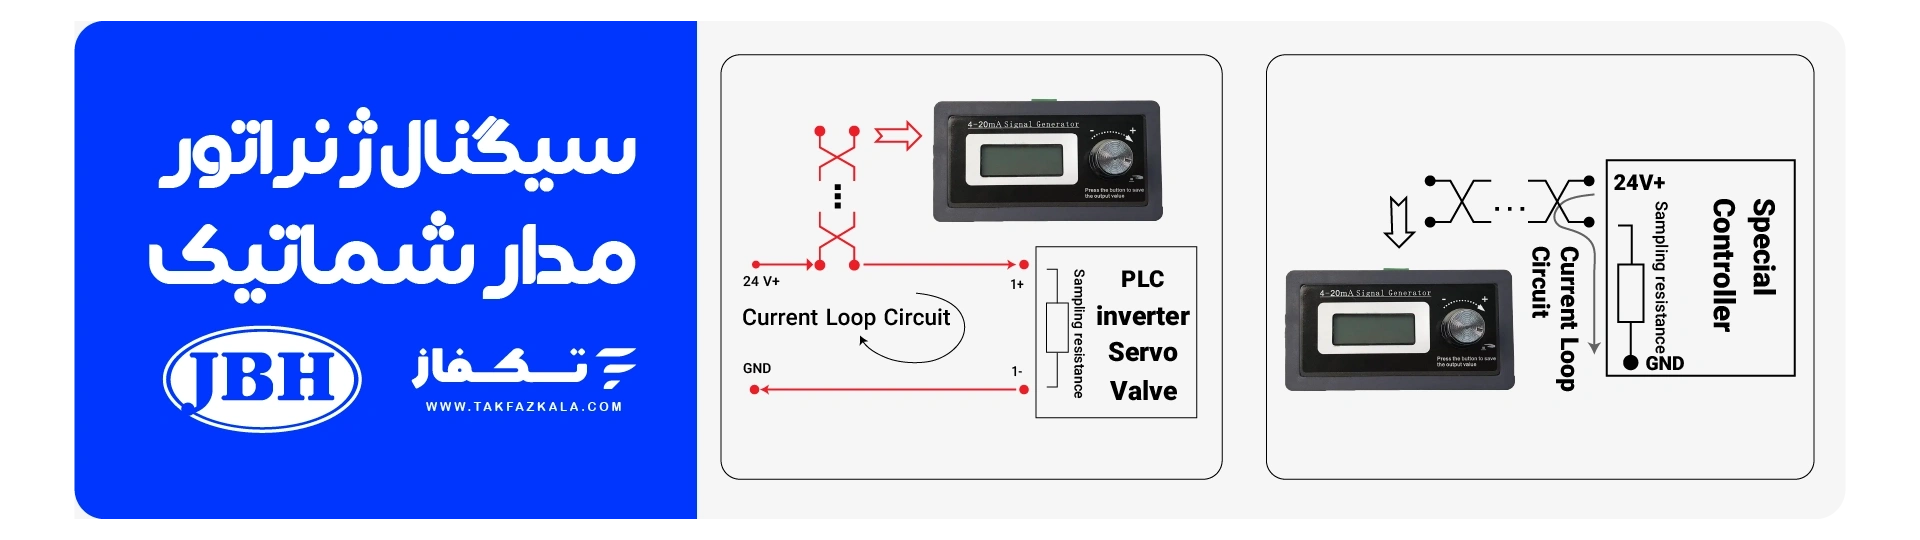 JBH signal generator circuit diagram 1